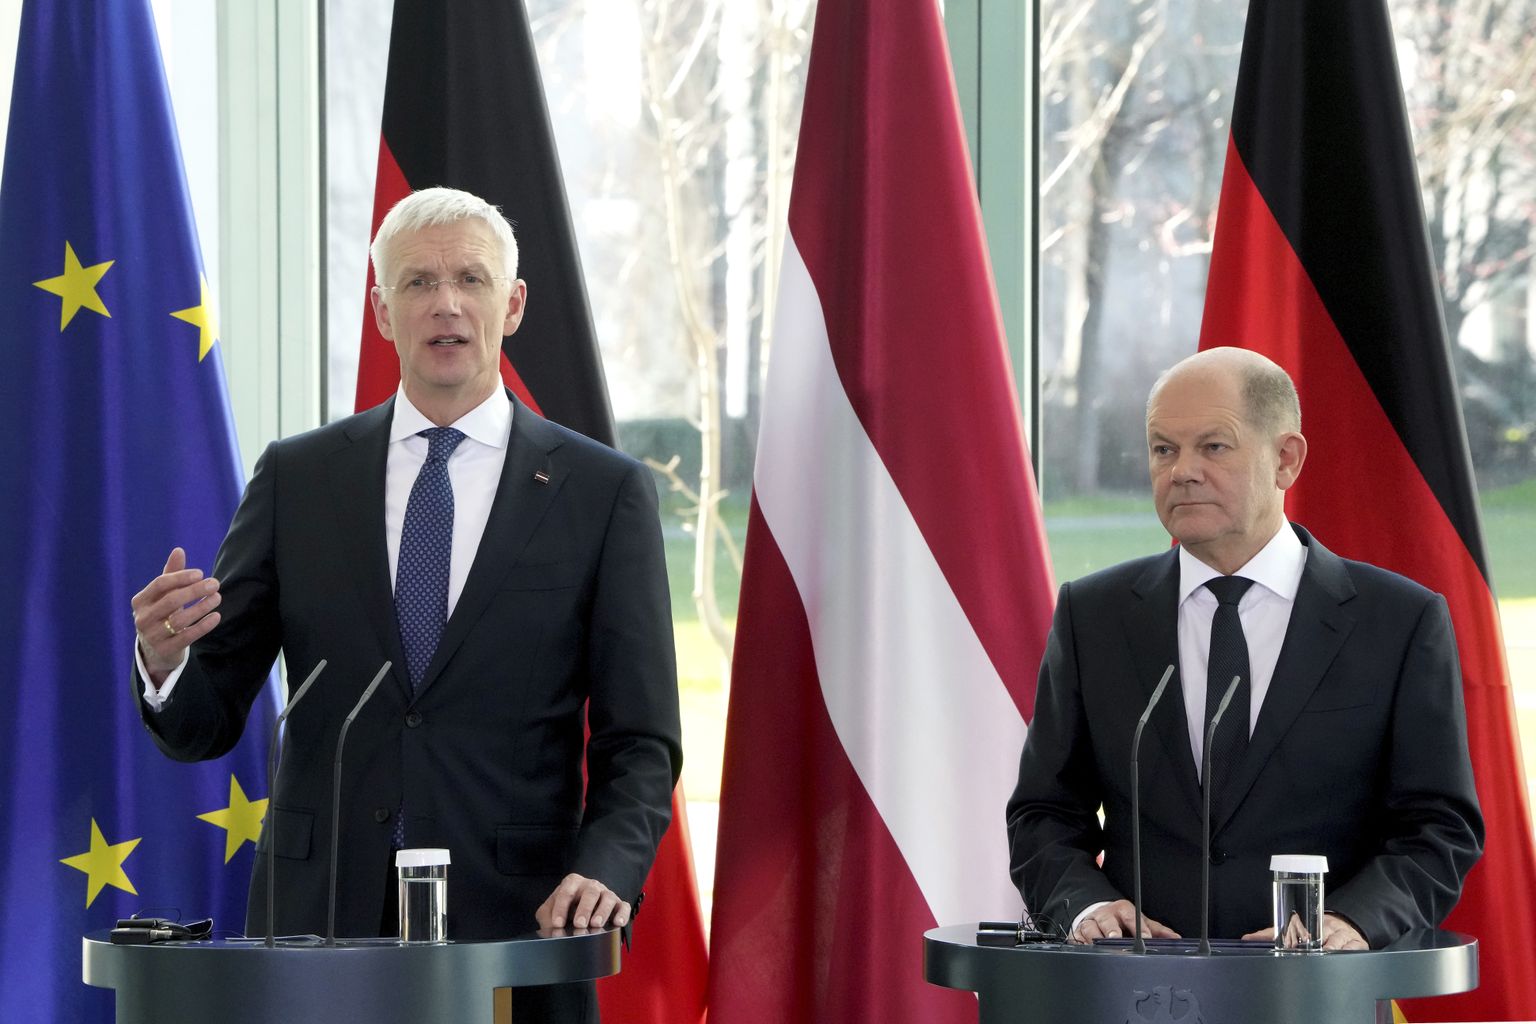 Vācijas kanclera Olafa Šolca un Latvijas Ministru prezidenta Krišjāņa Kariņa (JV) tikšanās